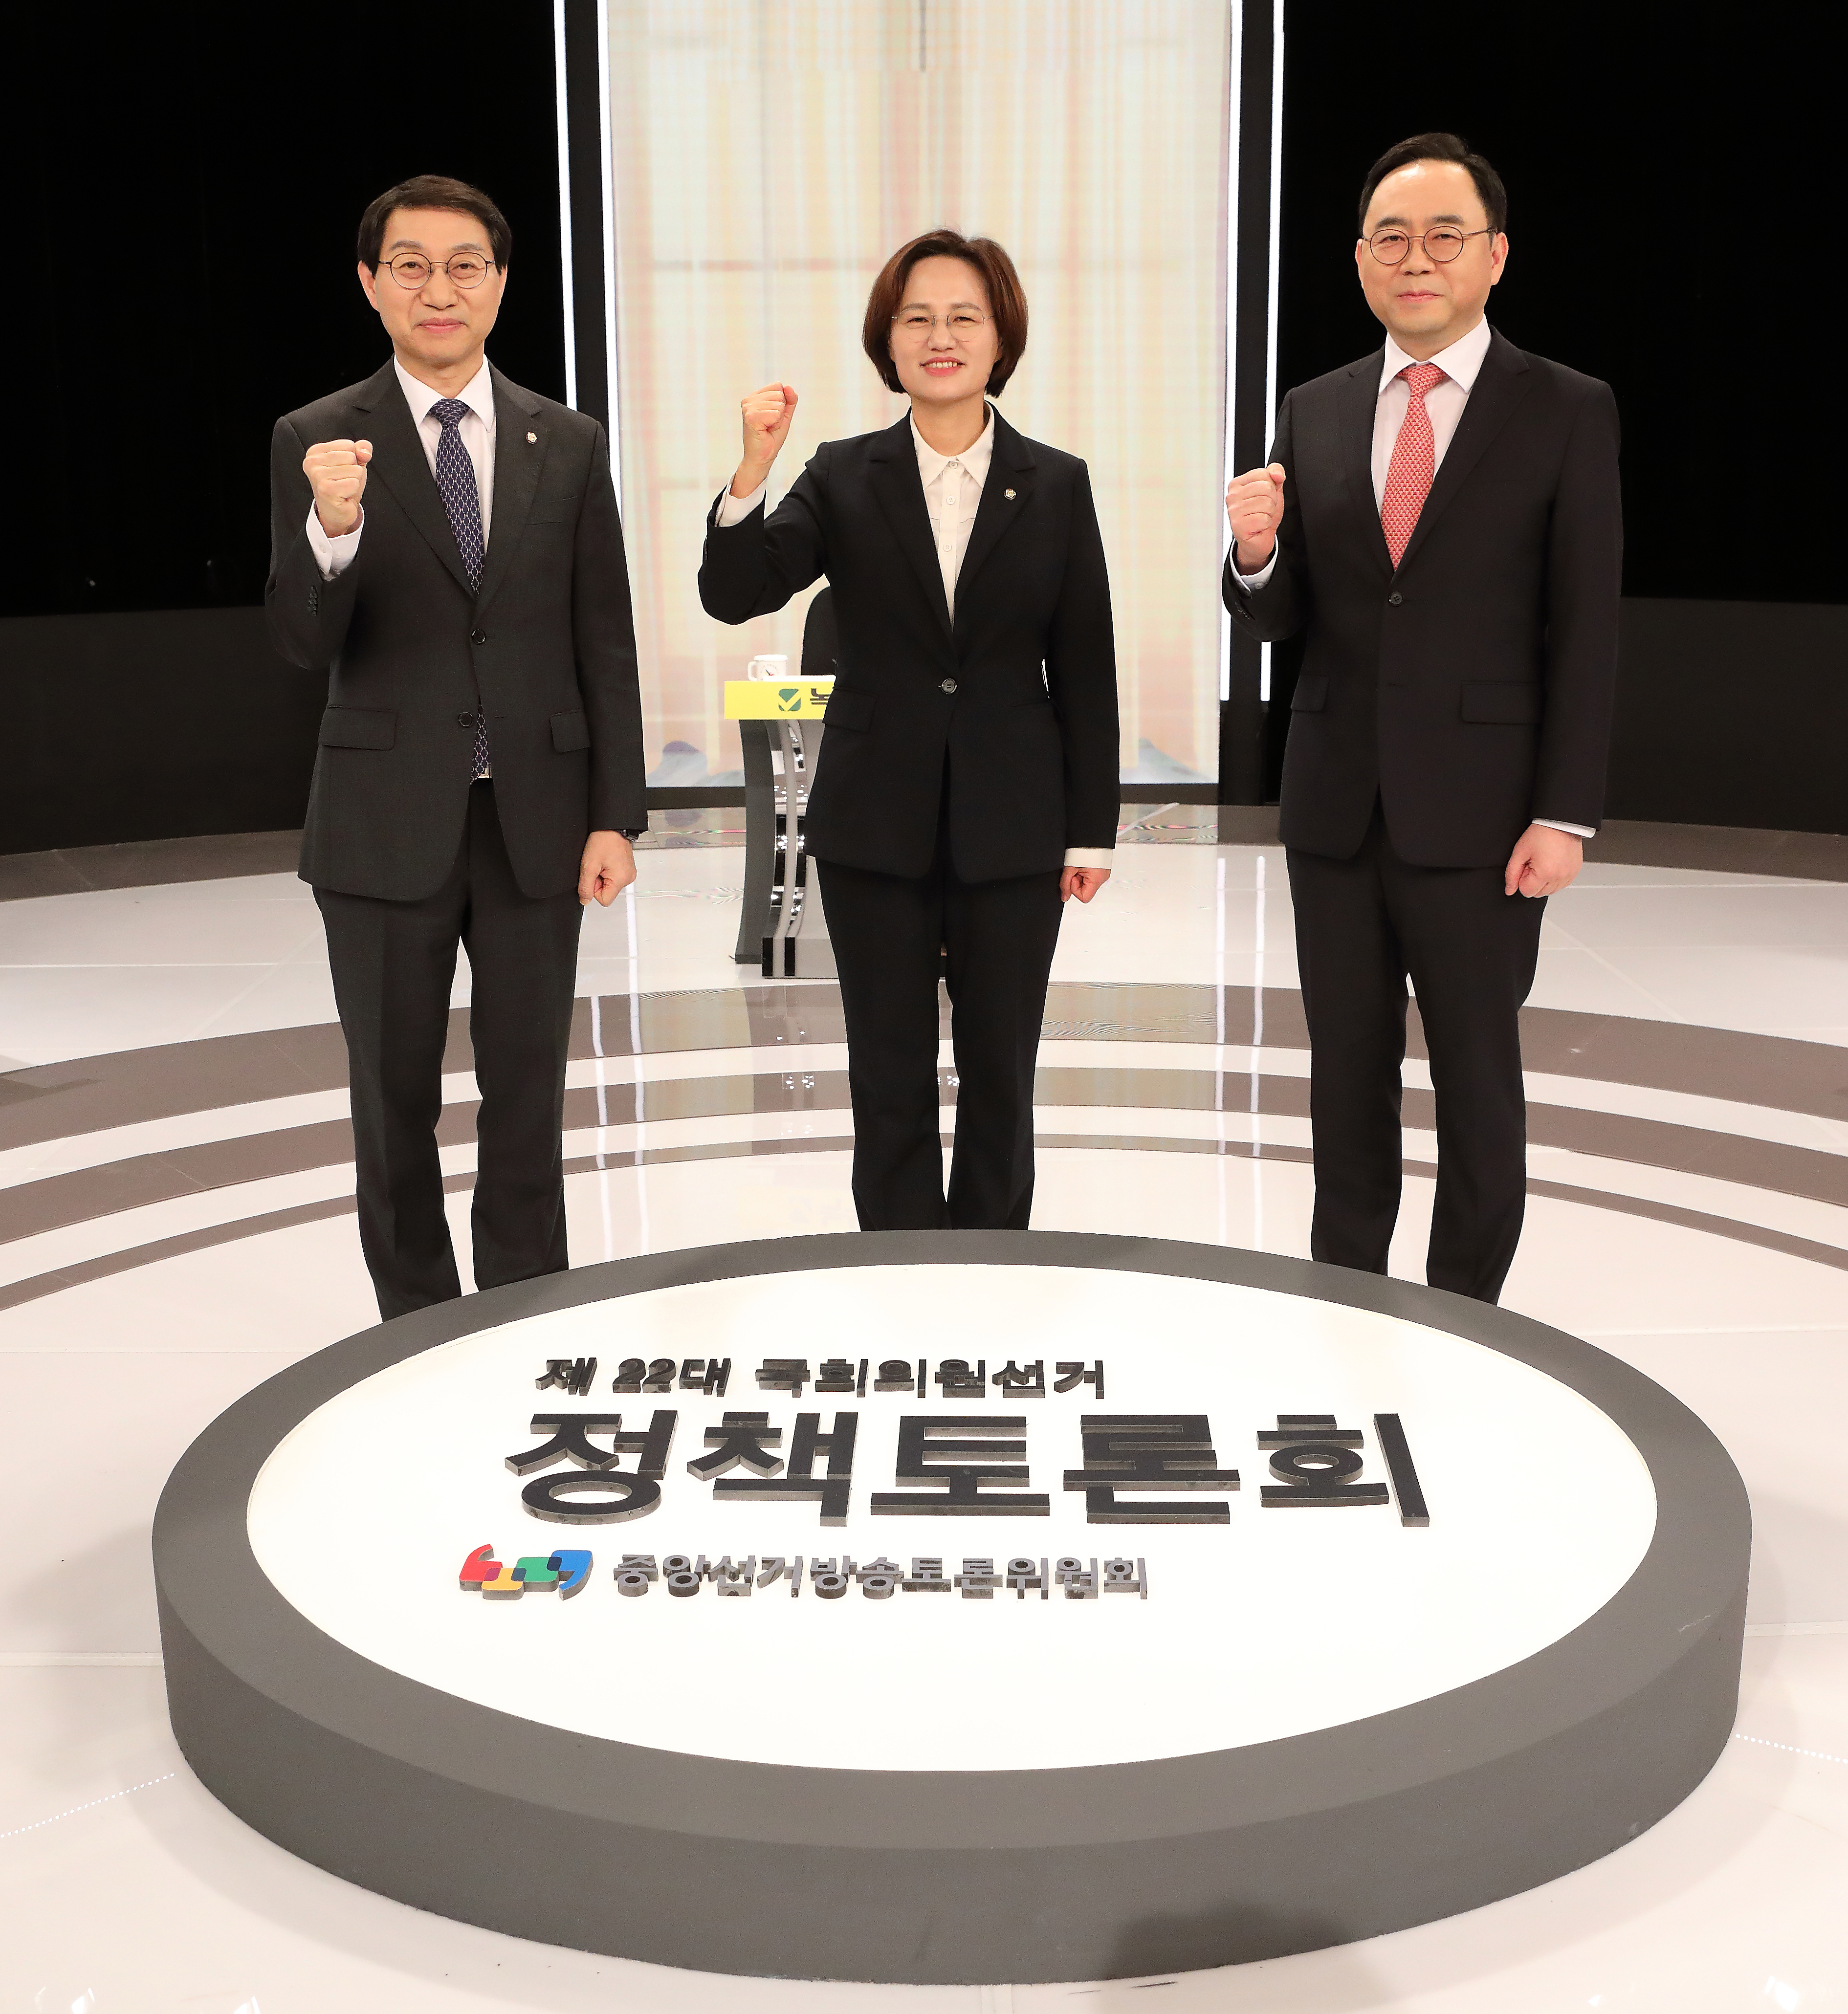 제22대 국회의원선거 제2차 정책토론회 개최